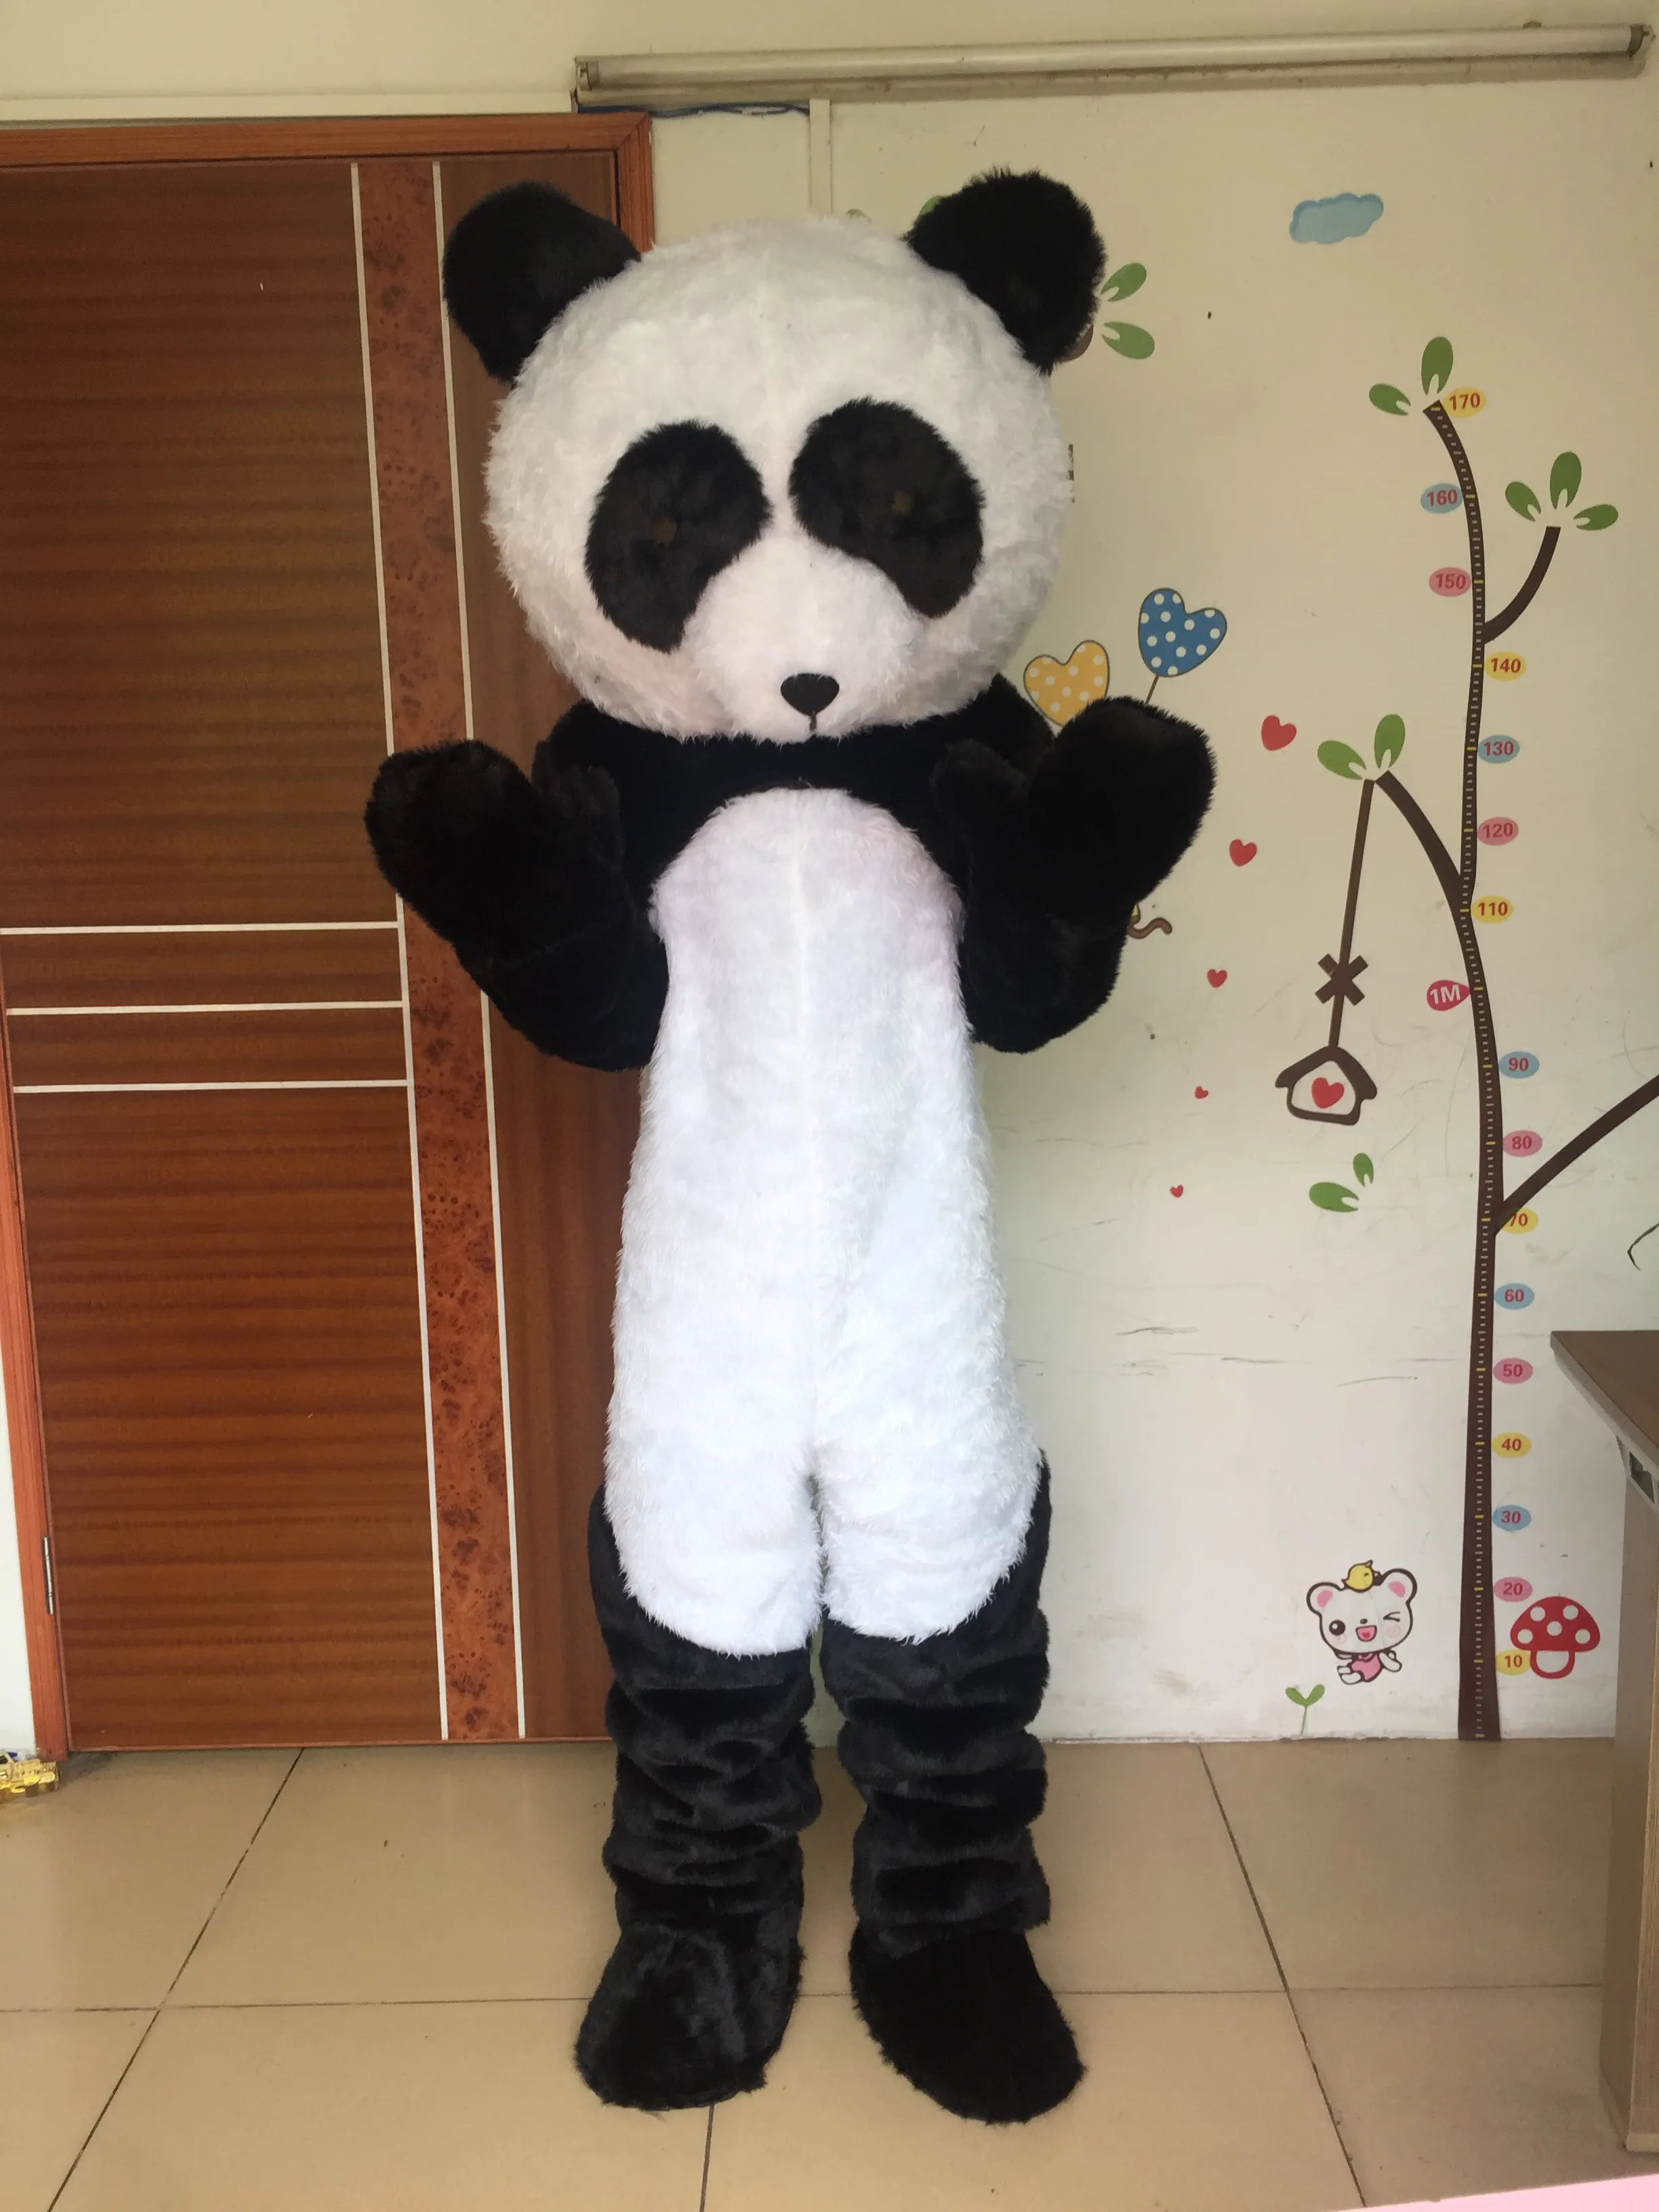 Costume adulto della mascotte del panda del personaggio dei cartoni animati di alta qualità in vendita, costume della mascotte del vestito operato per la festa spedizione gratuita